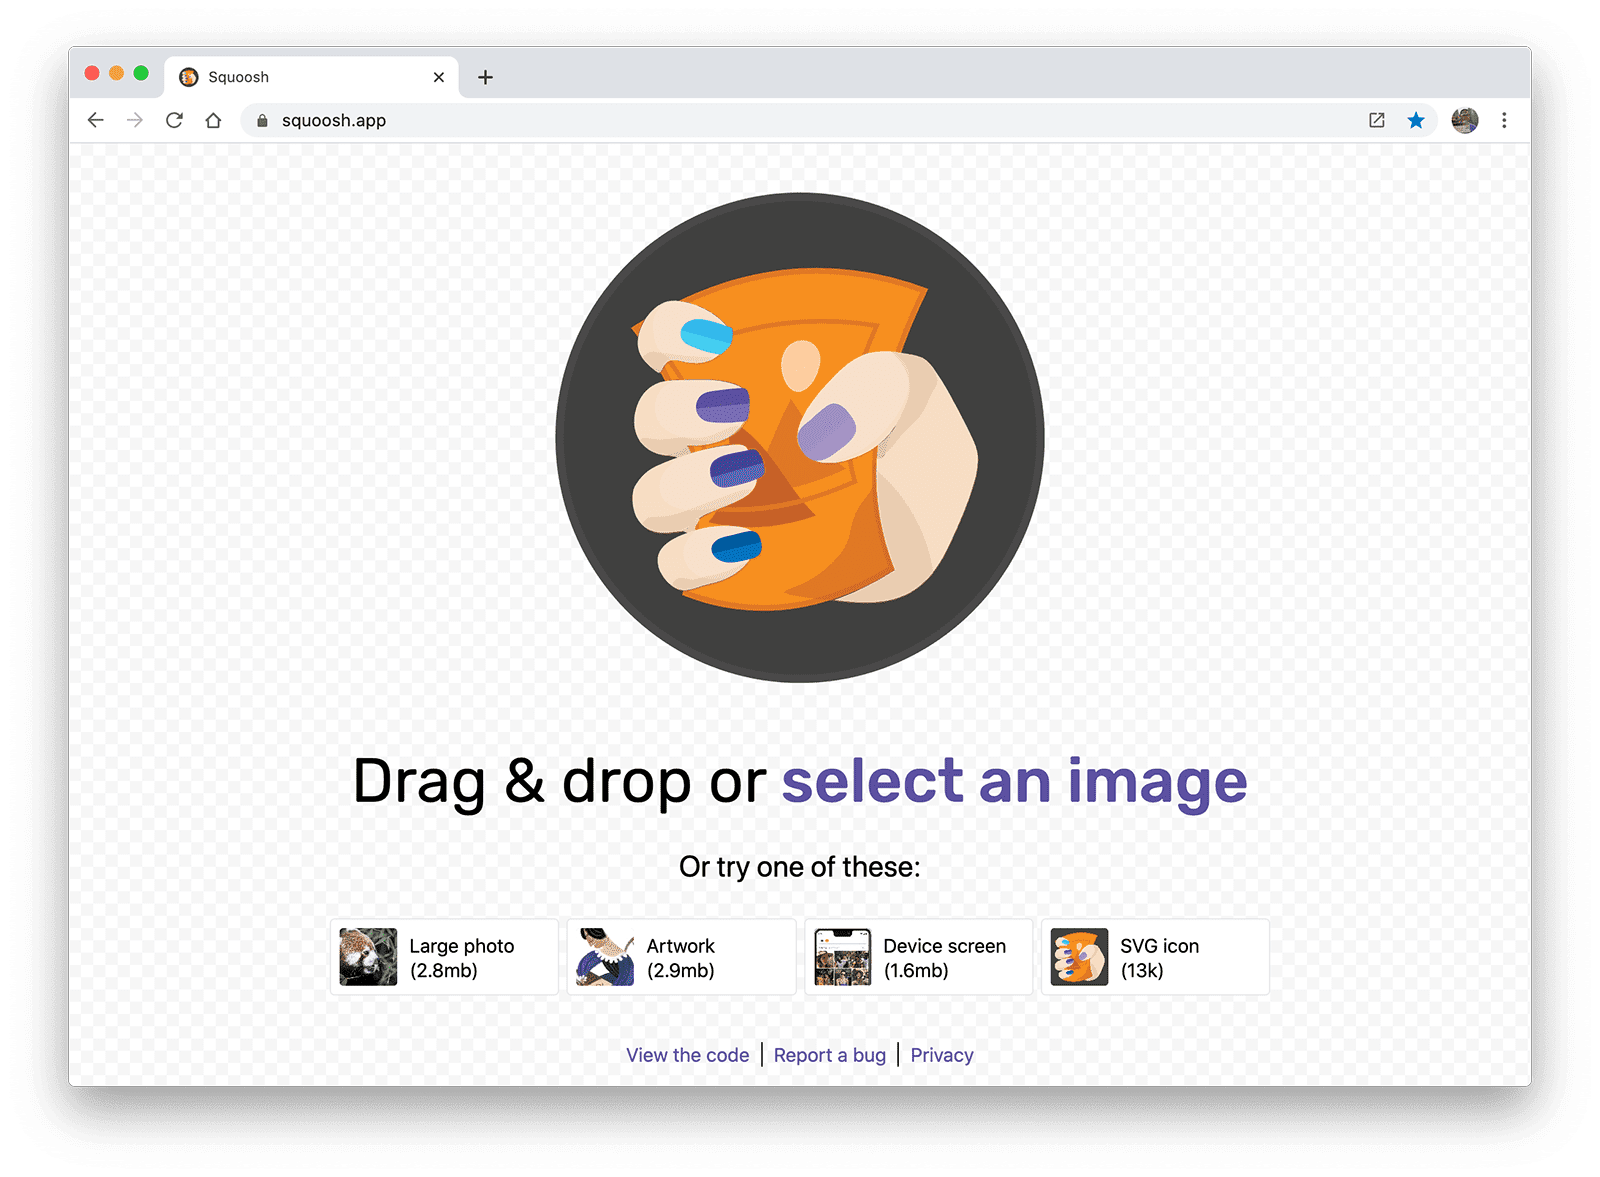 画像圧縮ウェブアプリ Squoosh のスクリーンショット。